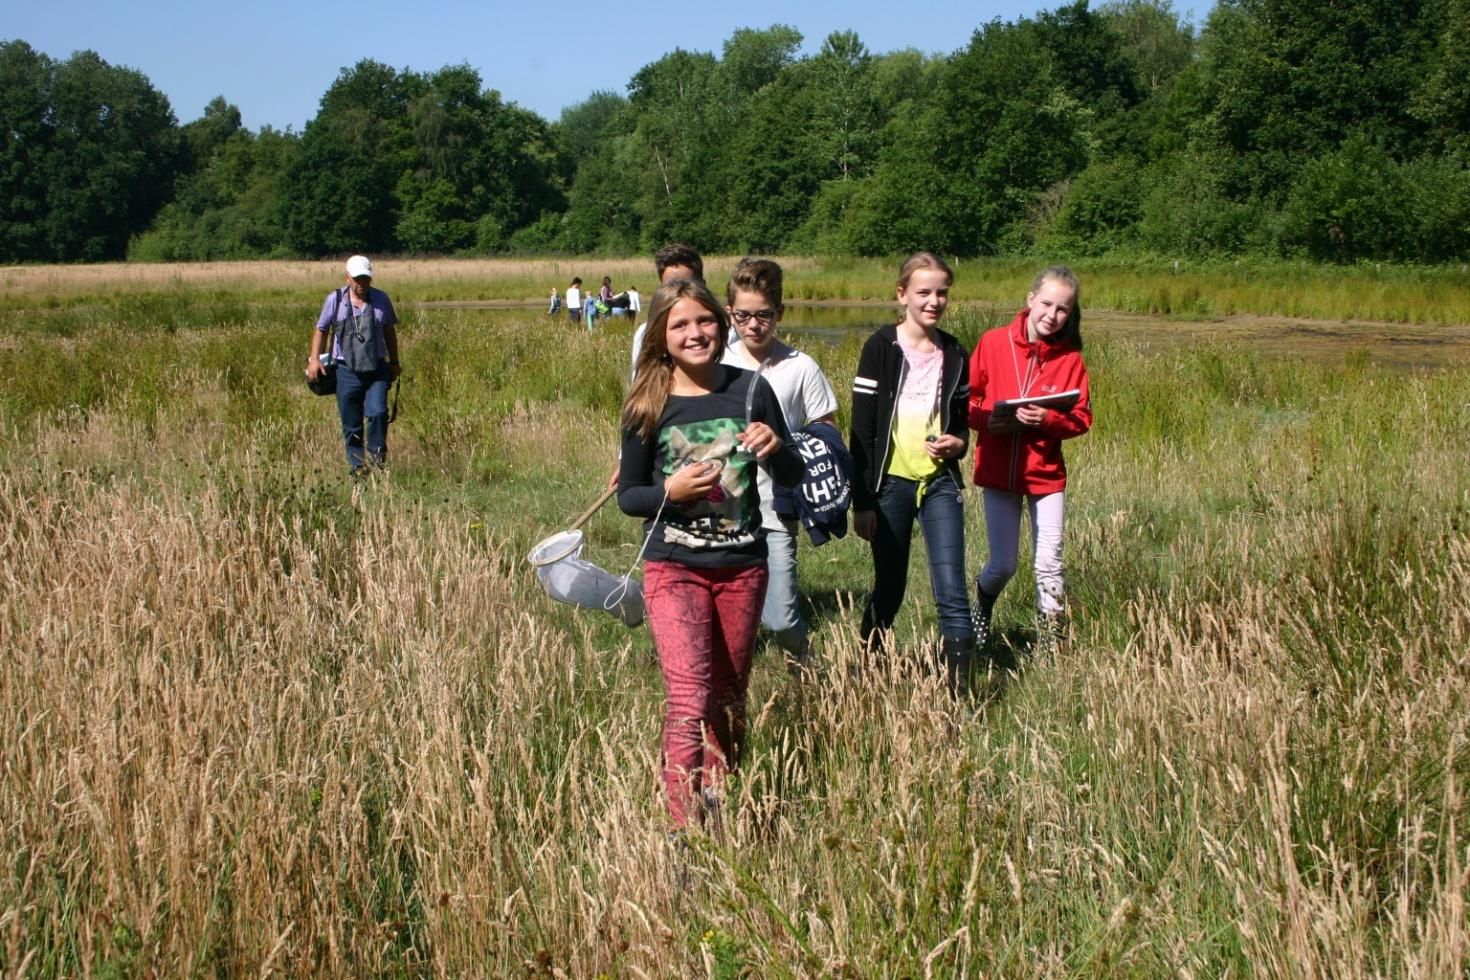 Verslag veldlessen Kempen-Broek 2015 Met de veldlessen in het Kempen-Broek krijgen schoolkinderen een unieke natuurbelevenis op een plek die van belang is voor natuurontwikkeling in het Kempen-Broek.